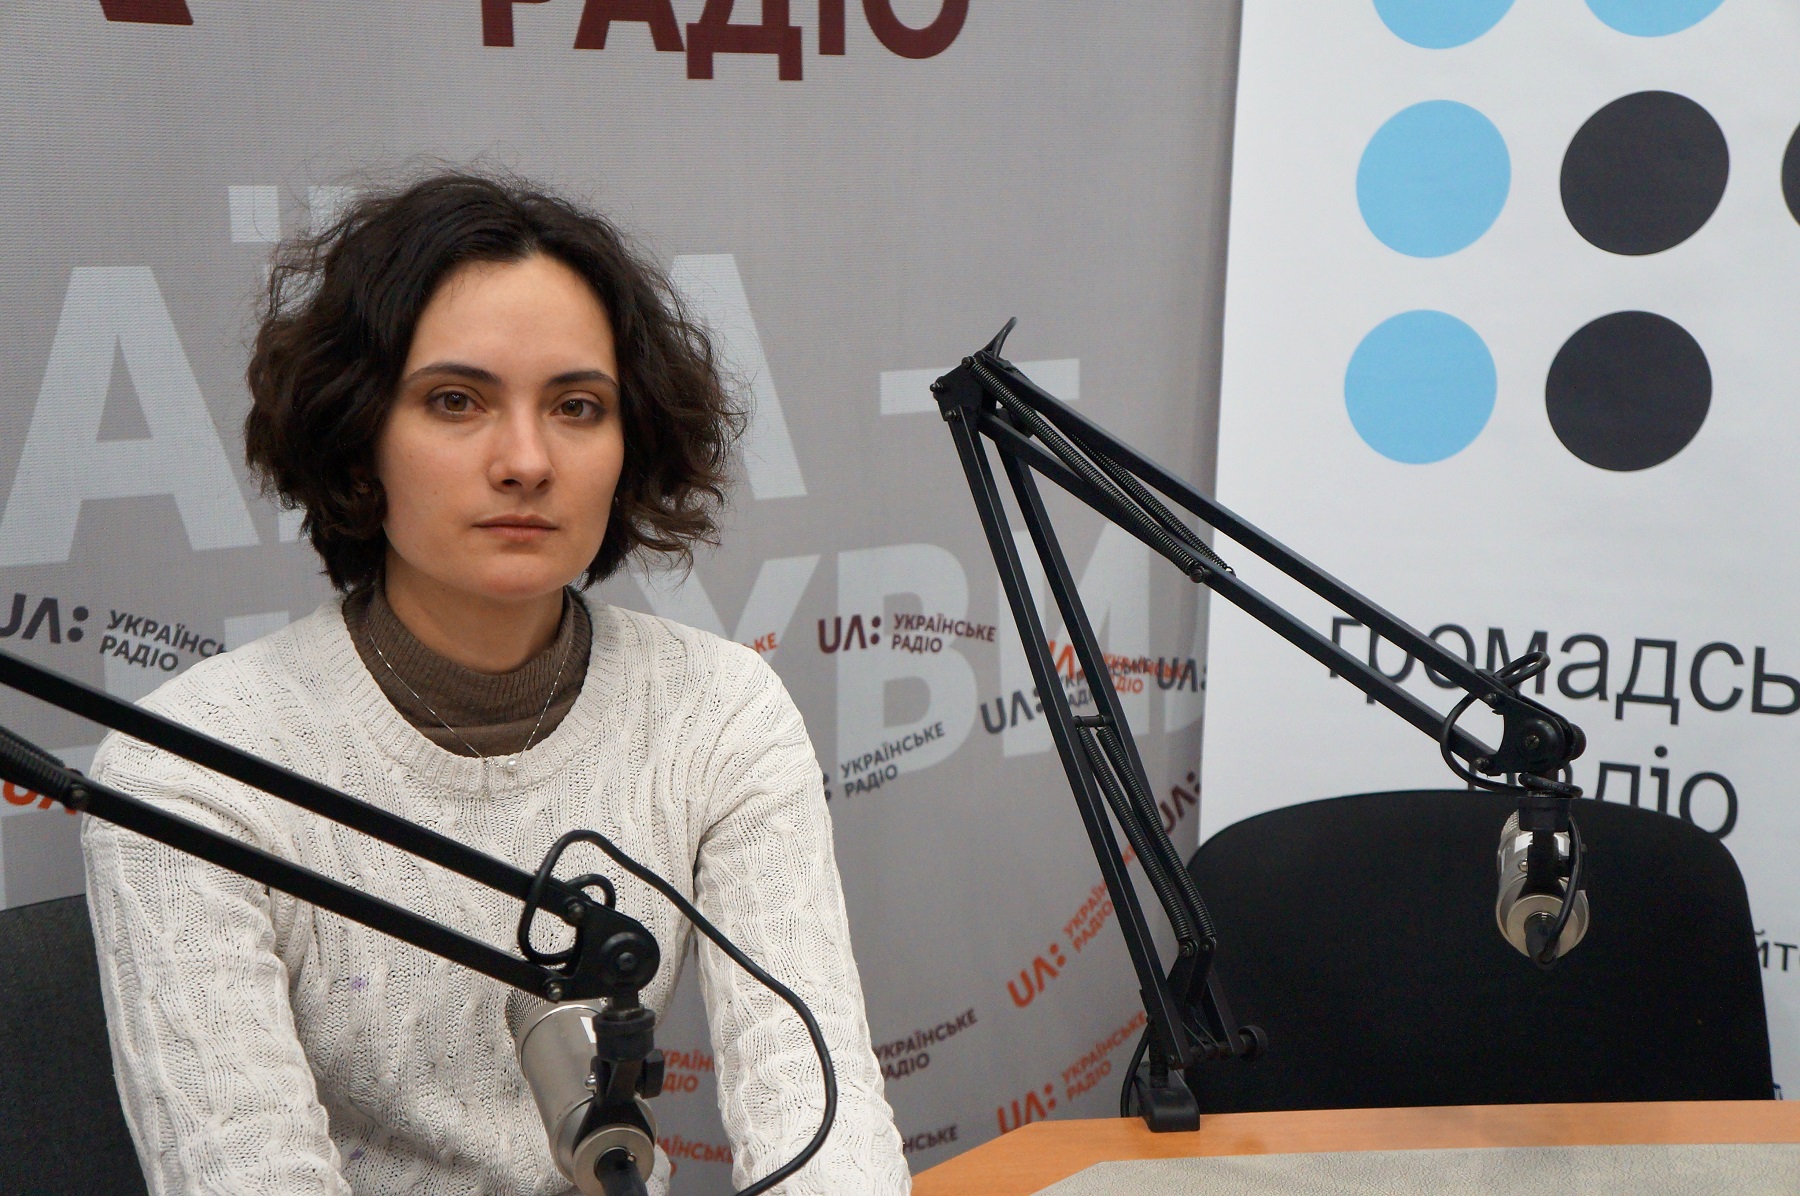 В Україні потужне звичаєве право, значення мають стереотипи, а не закони, - Анастасія Мельниченко